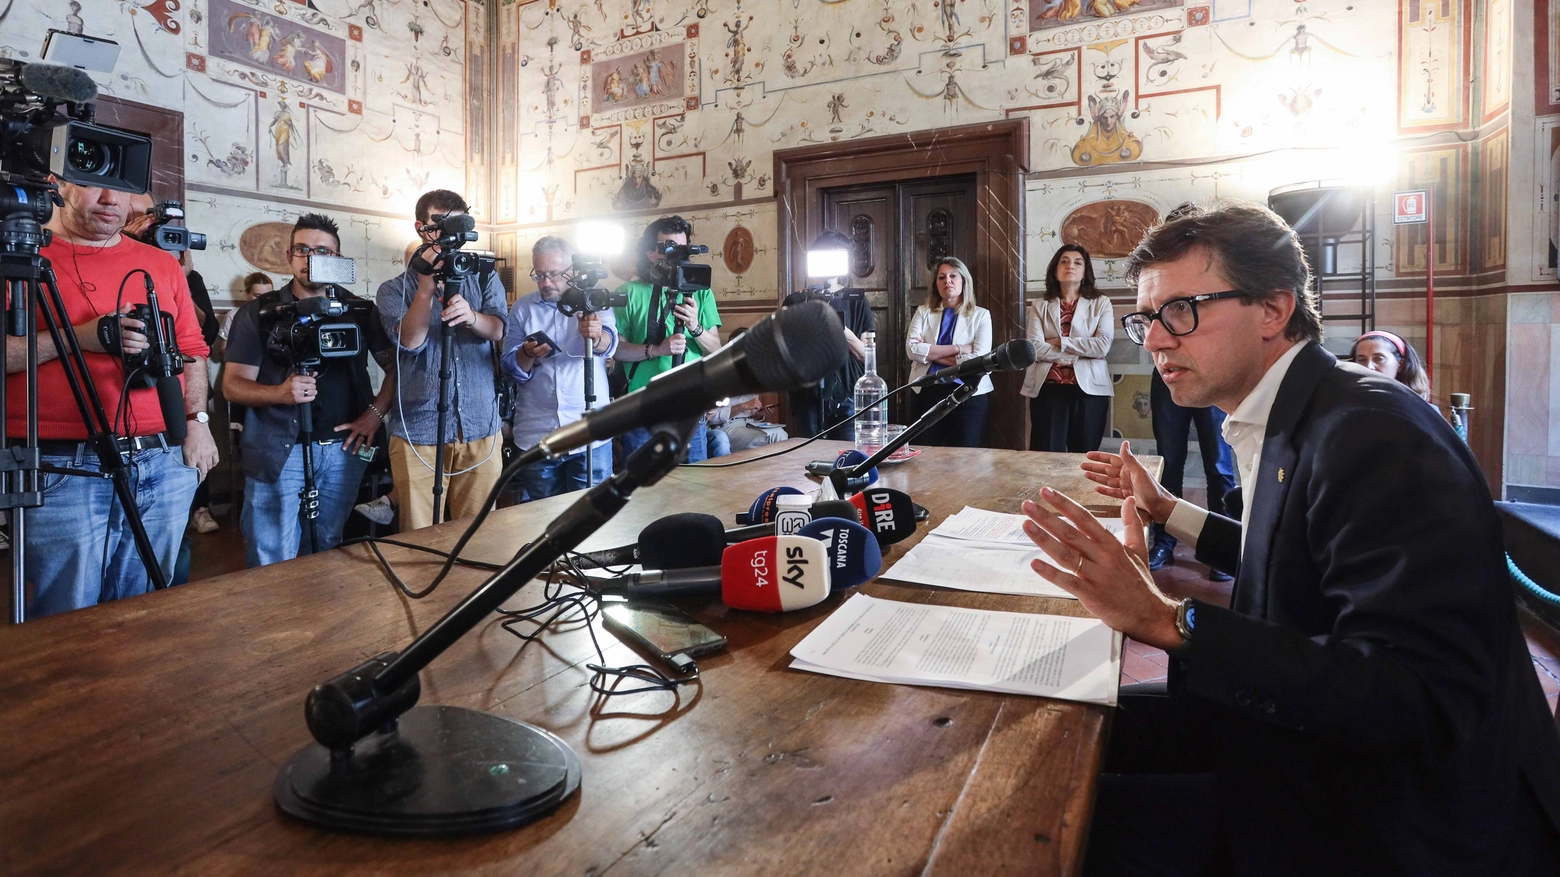 La conferenza stampa del sindaco Dario Nardella sugli affitti brevi a Firenze (Foto New Press Photo)